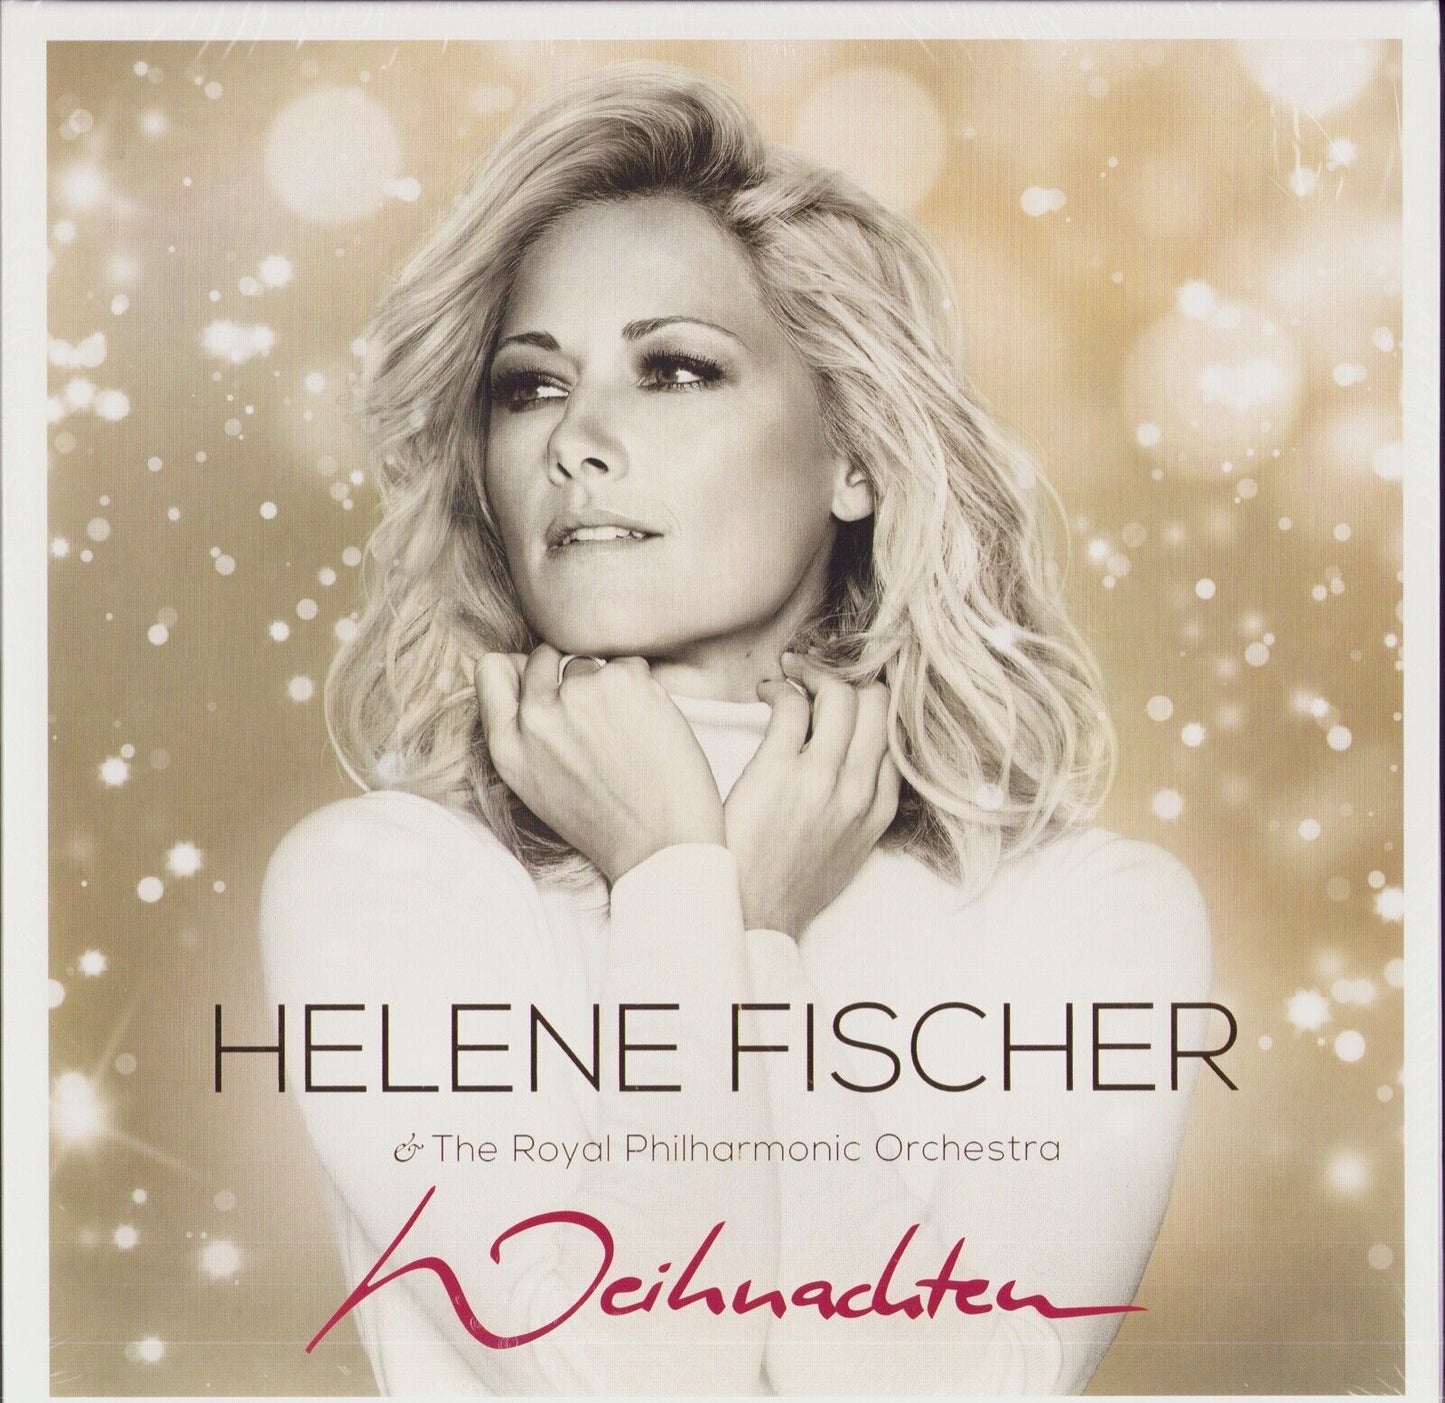 Helene Fischer & The Royal Philharmonic Orchestra - Weihnachten Vinyl 4LP